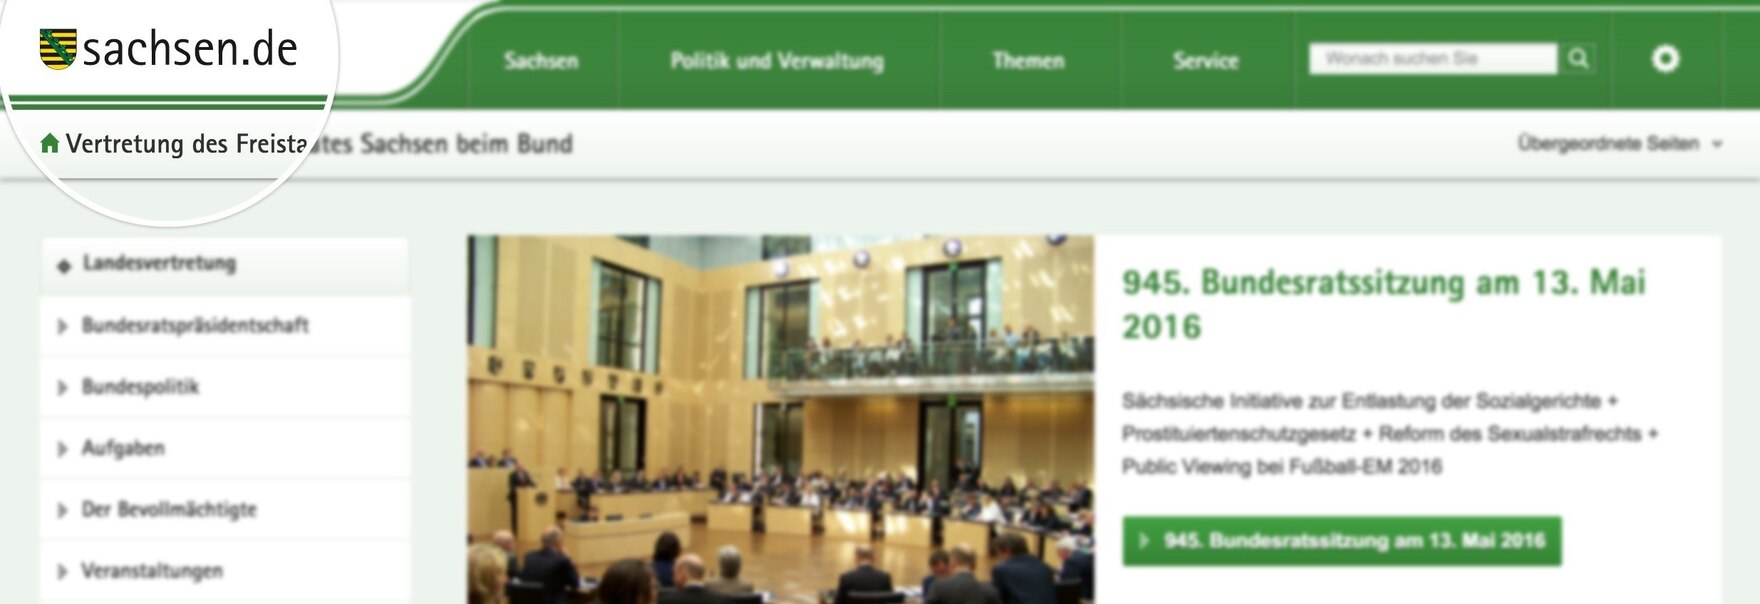 Screenshot: Online-Signet von sachsen.de innerhalb einer Webpräsenz